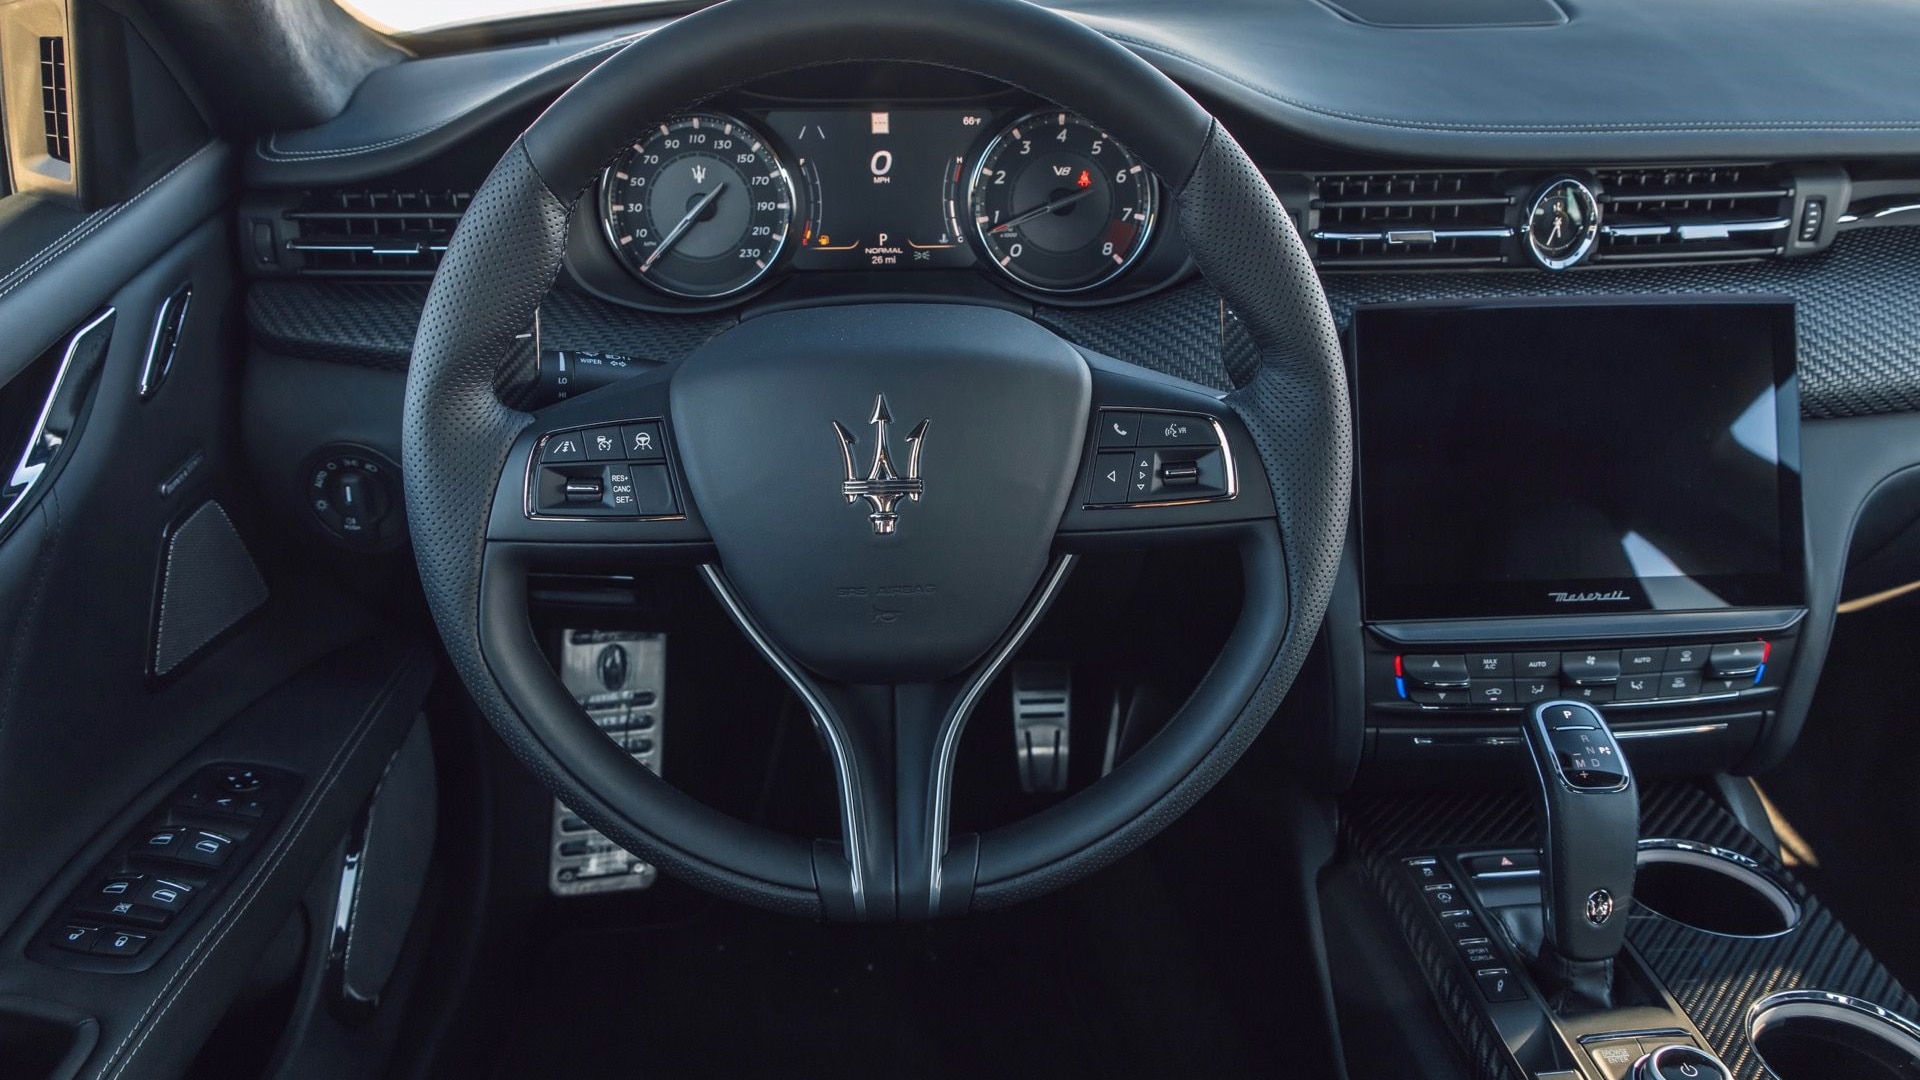 Maserati Fuoriserie customization program